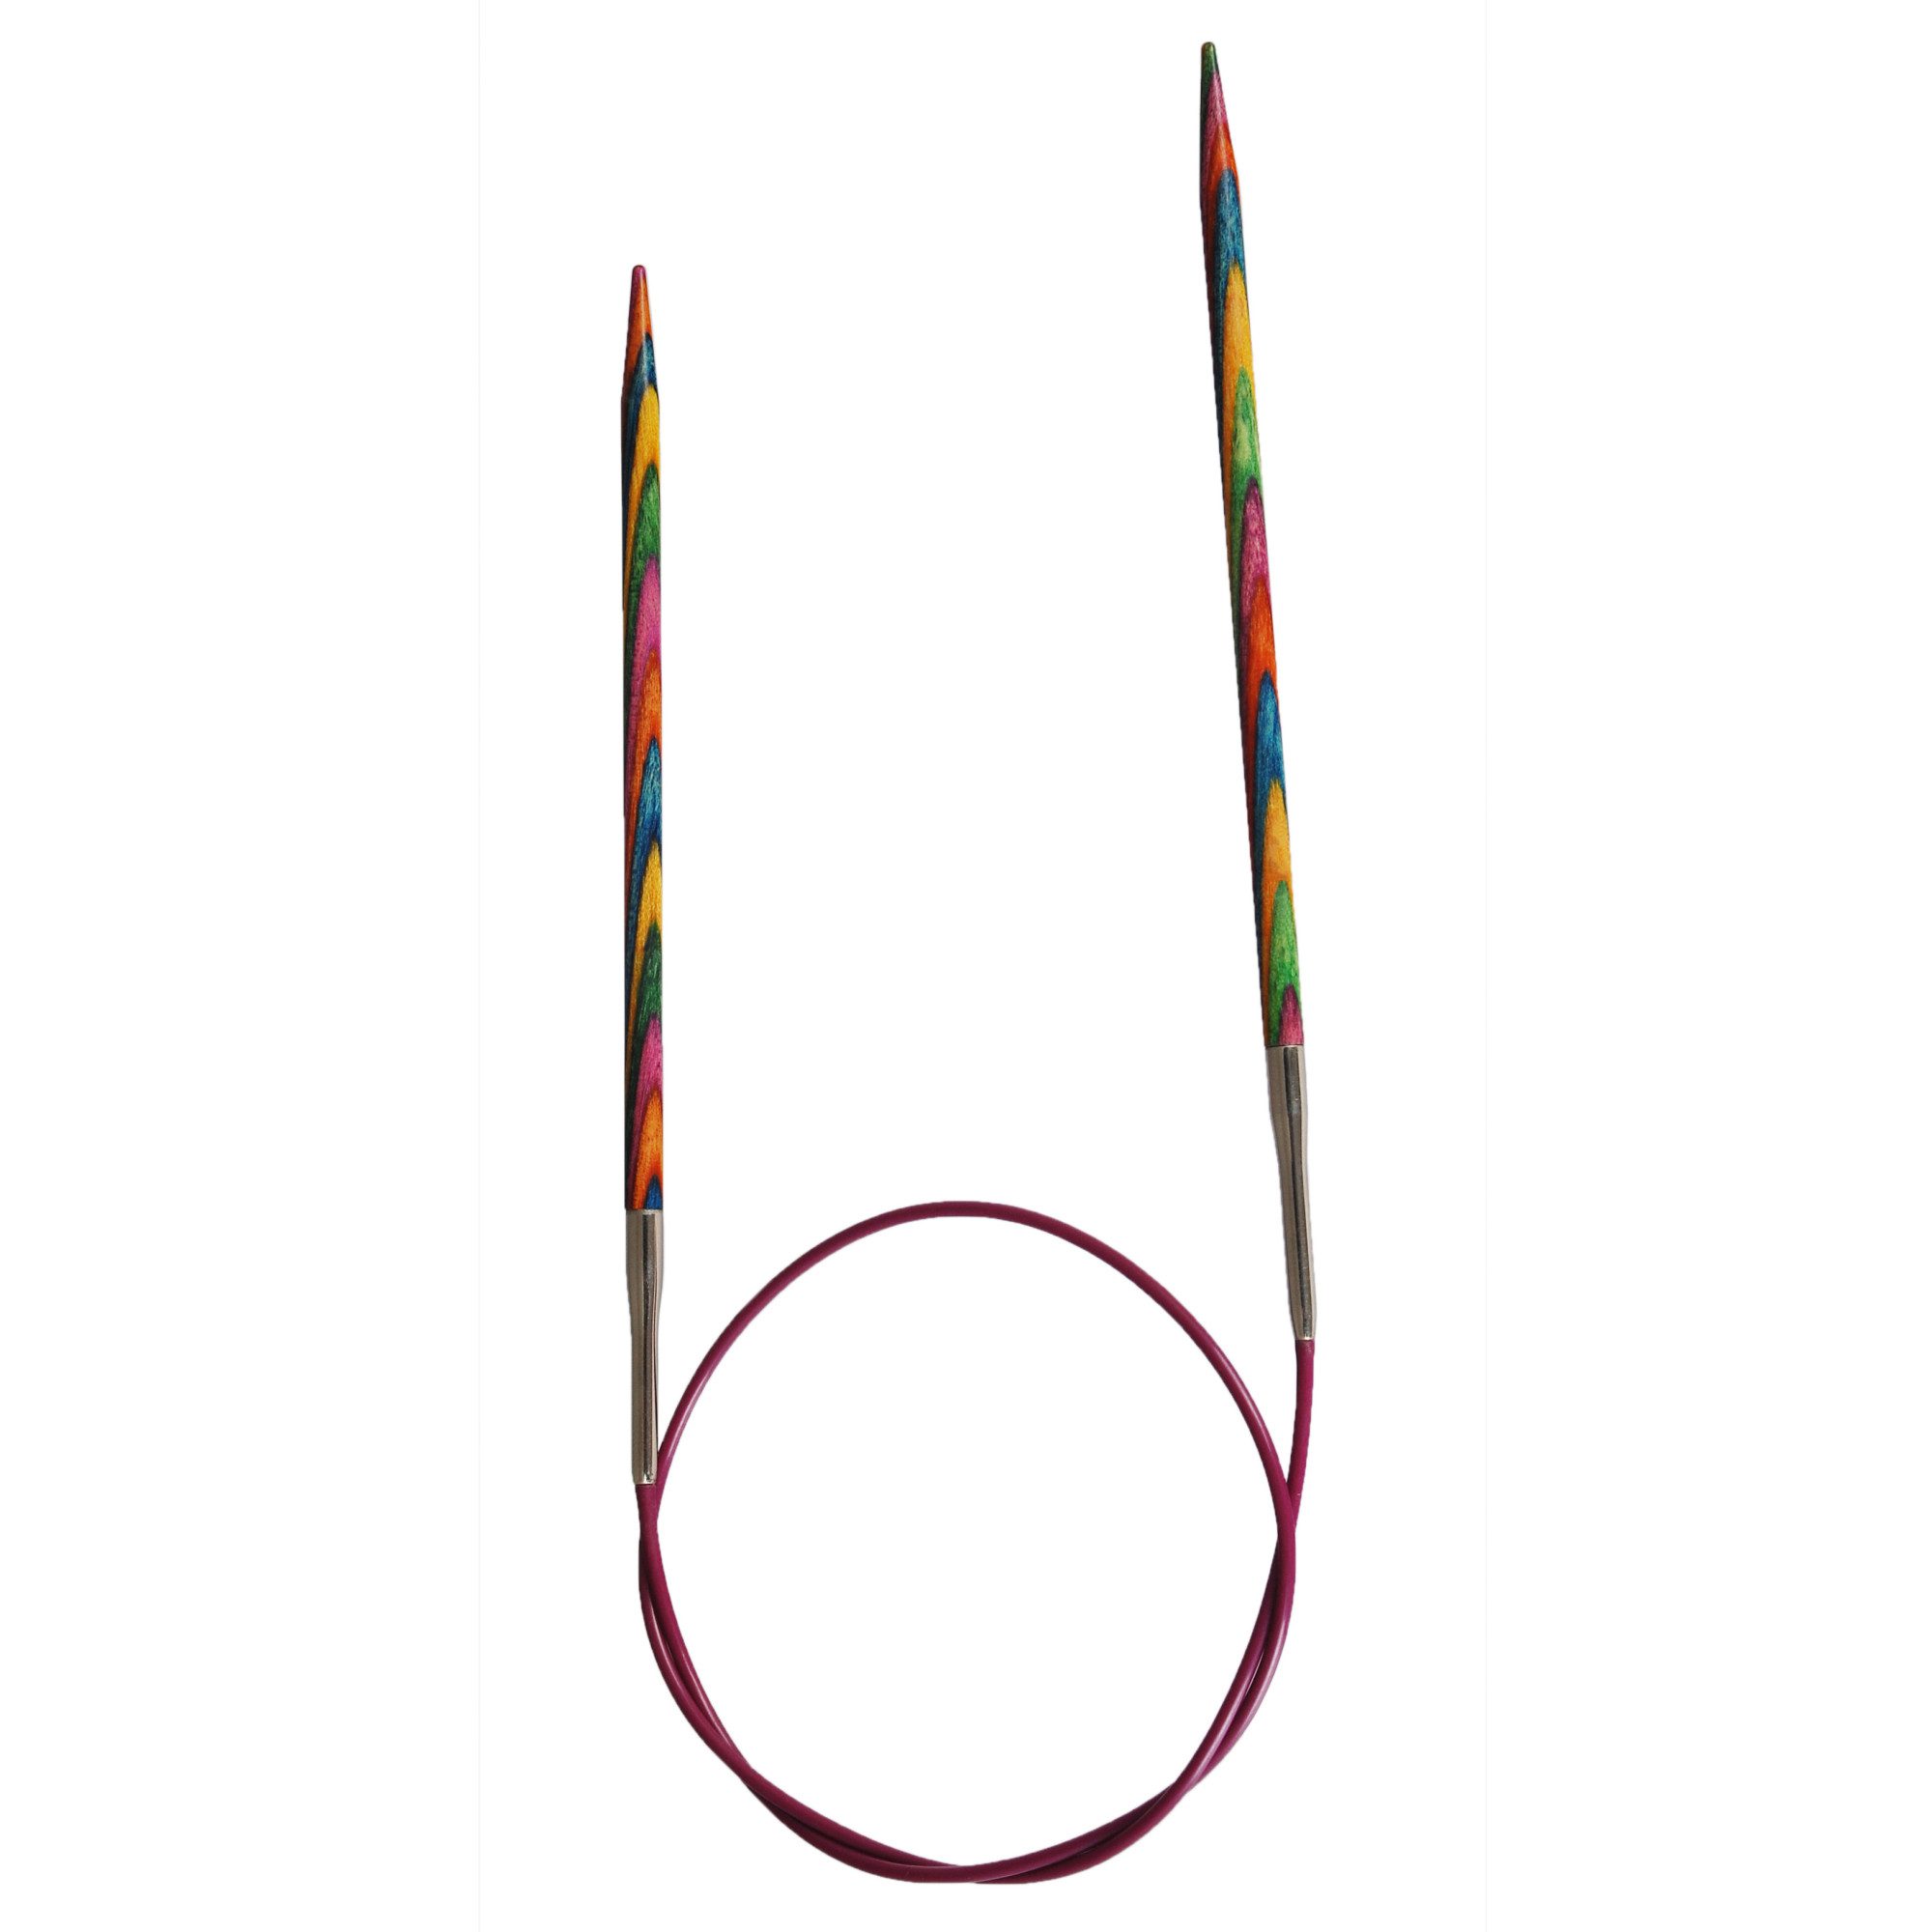 Knitpro Symfonie Circular Needles (Fixed) – 80cm product image